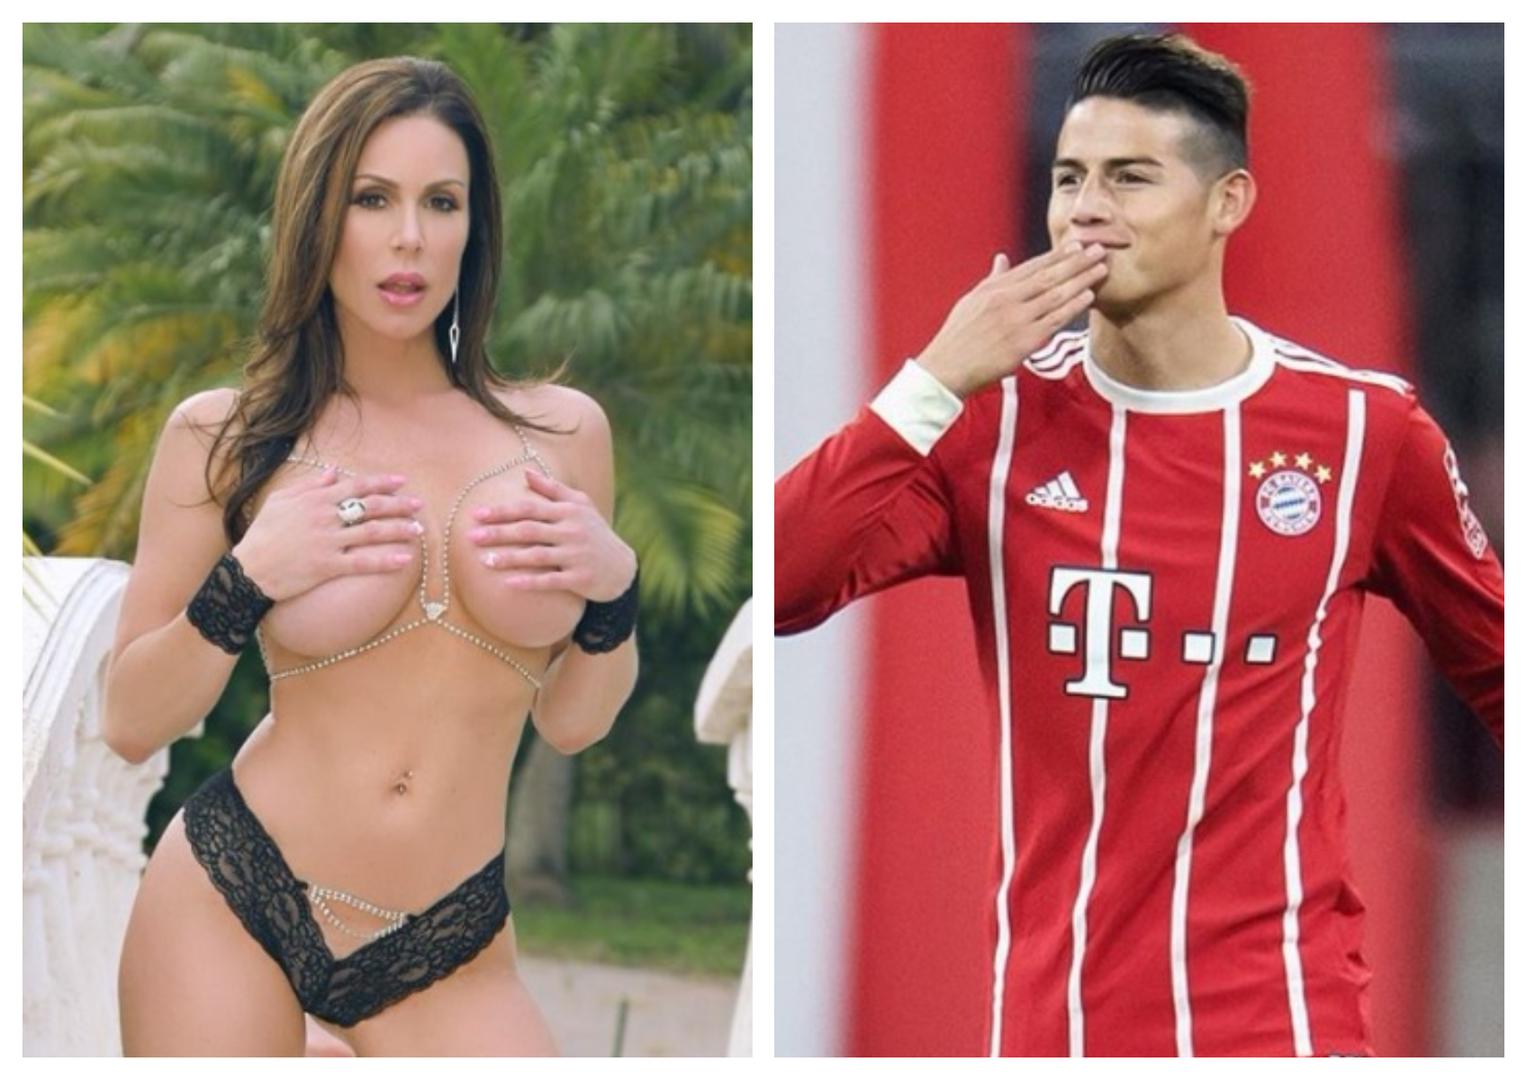 Bayernova zvijezda James Rodriguez nakon šest godina braka nedavno se razveo od Daniele Ospine. Svjetski mediji pišu kako je 26-godišnjem kolumbijskom reprezentativcu za oko zapela pornoglumica Kendra Lust.